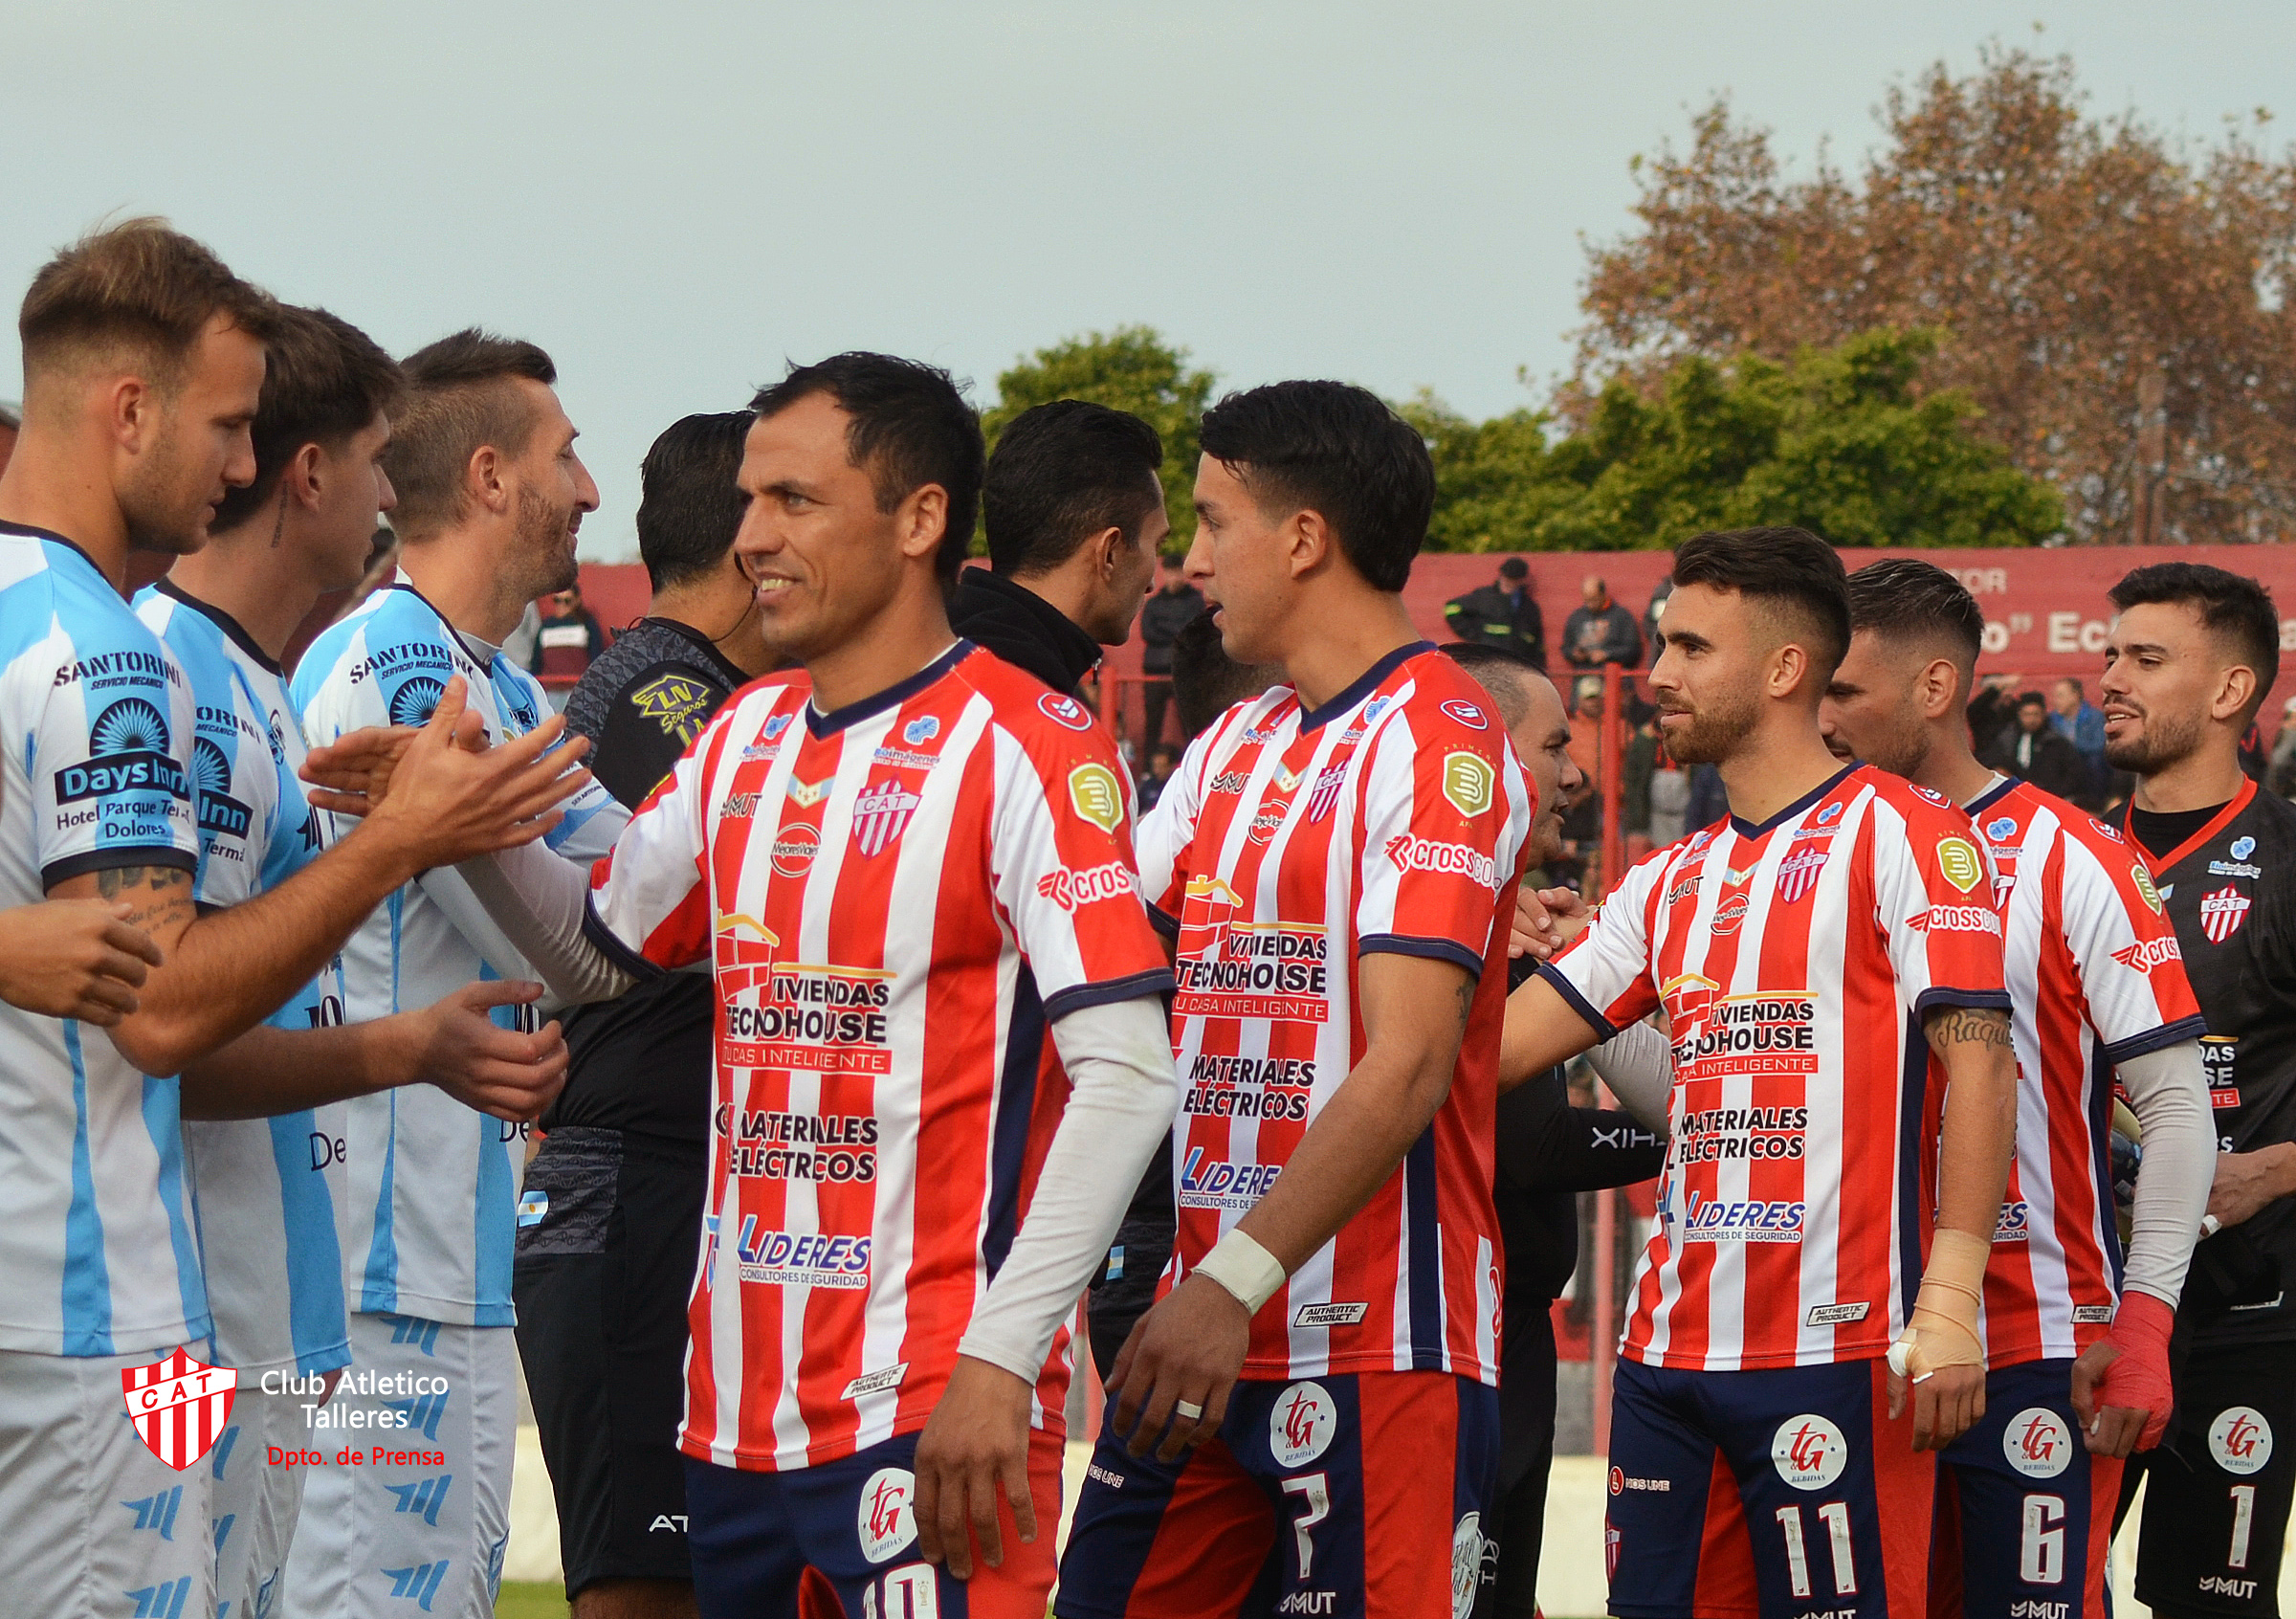 FútbolProfesional #PrimeraB 🇦🇹 - Club Atlético Talleres